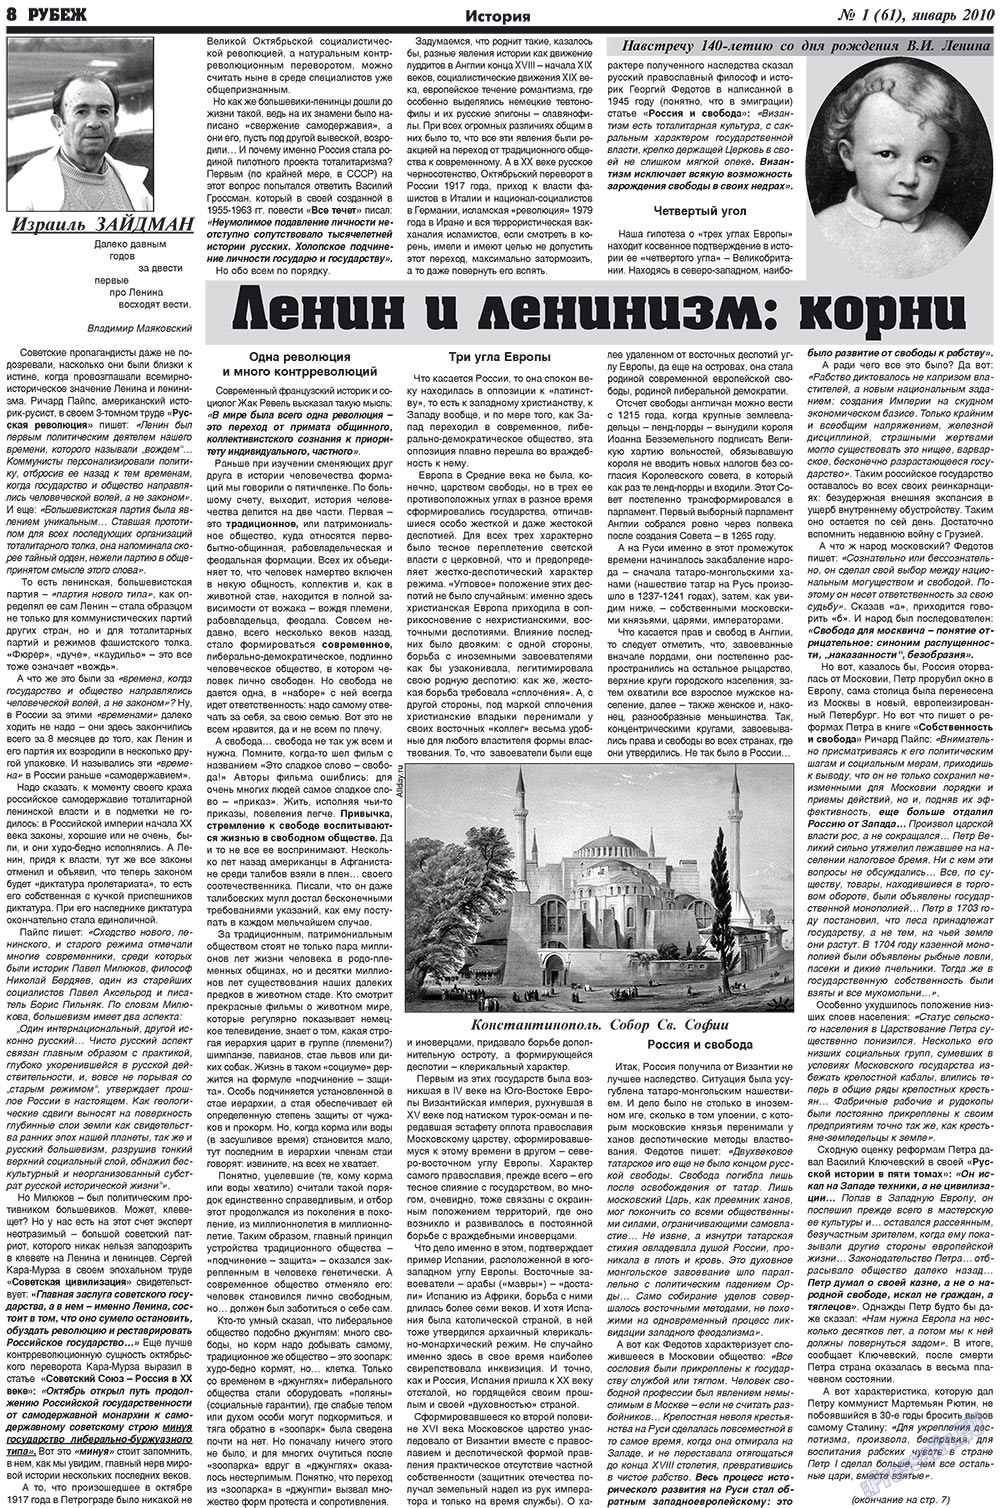 Рубеж (газета). 2010 год, номер 1, стр. 8